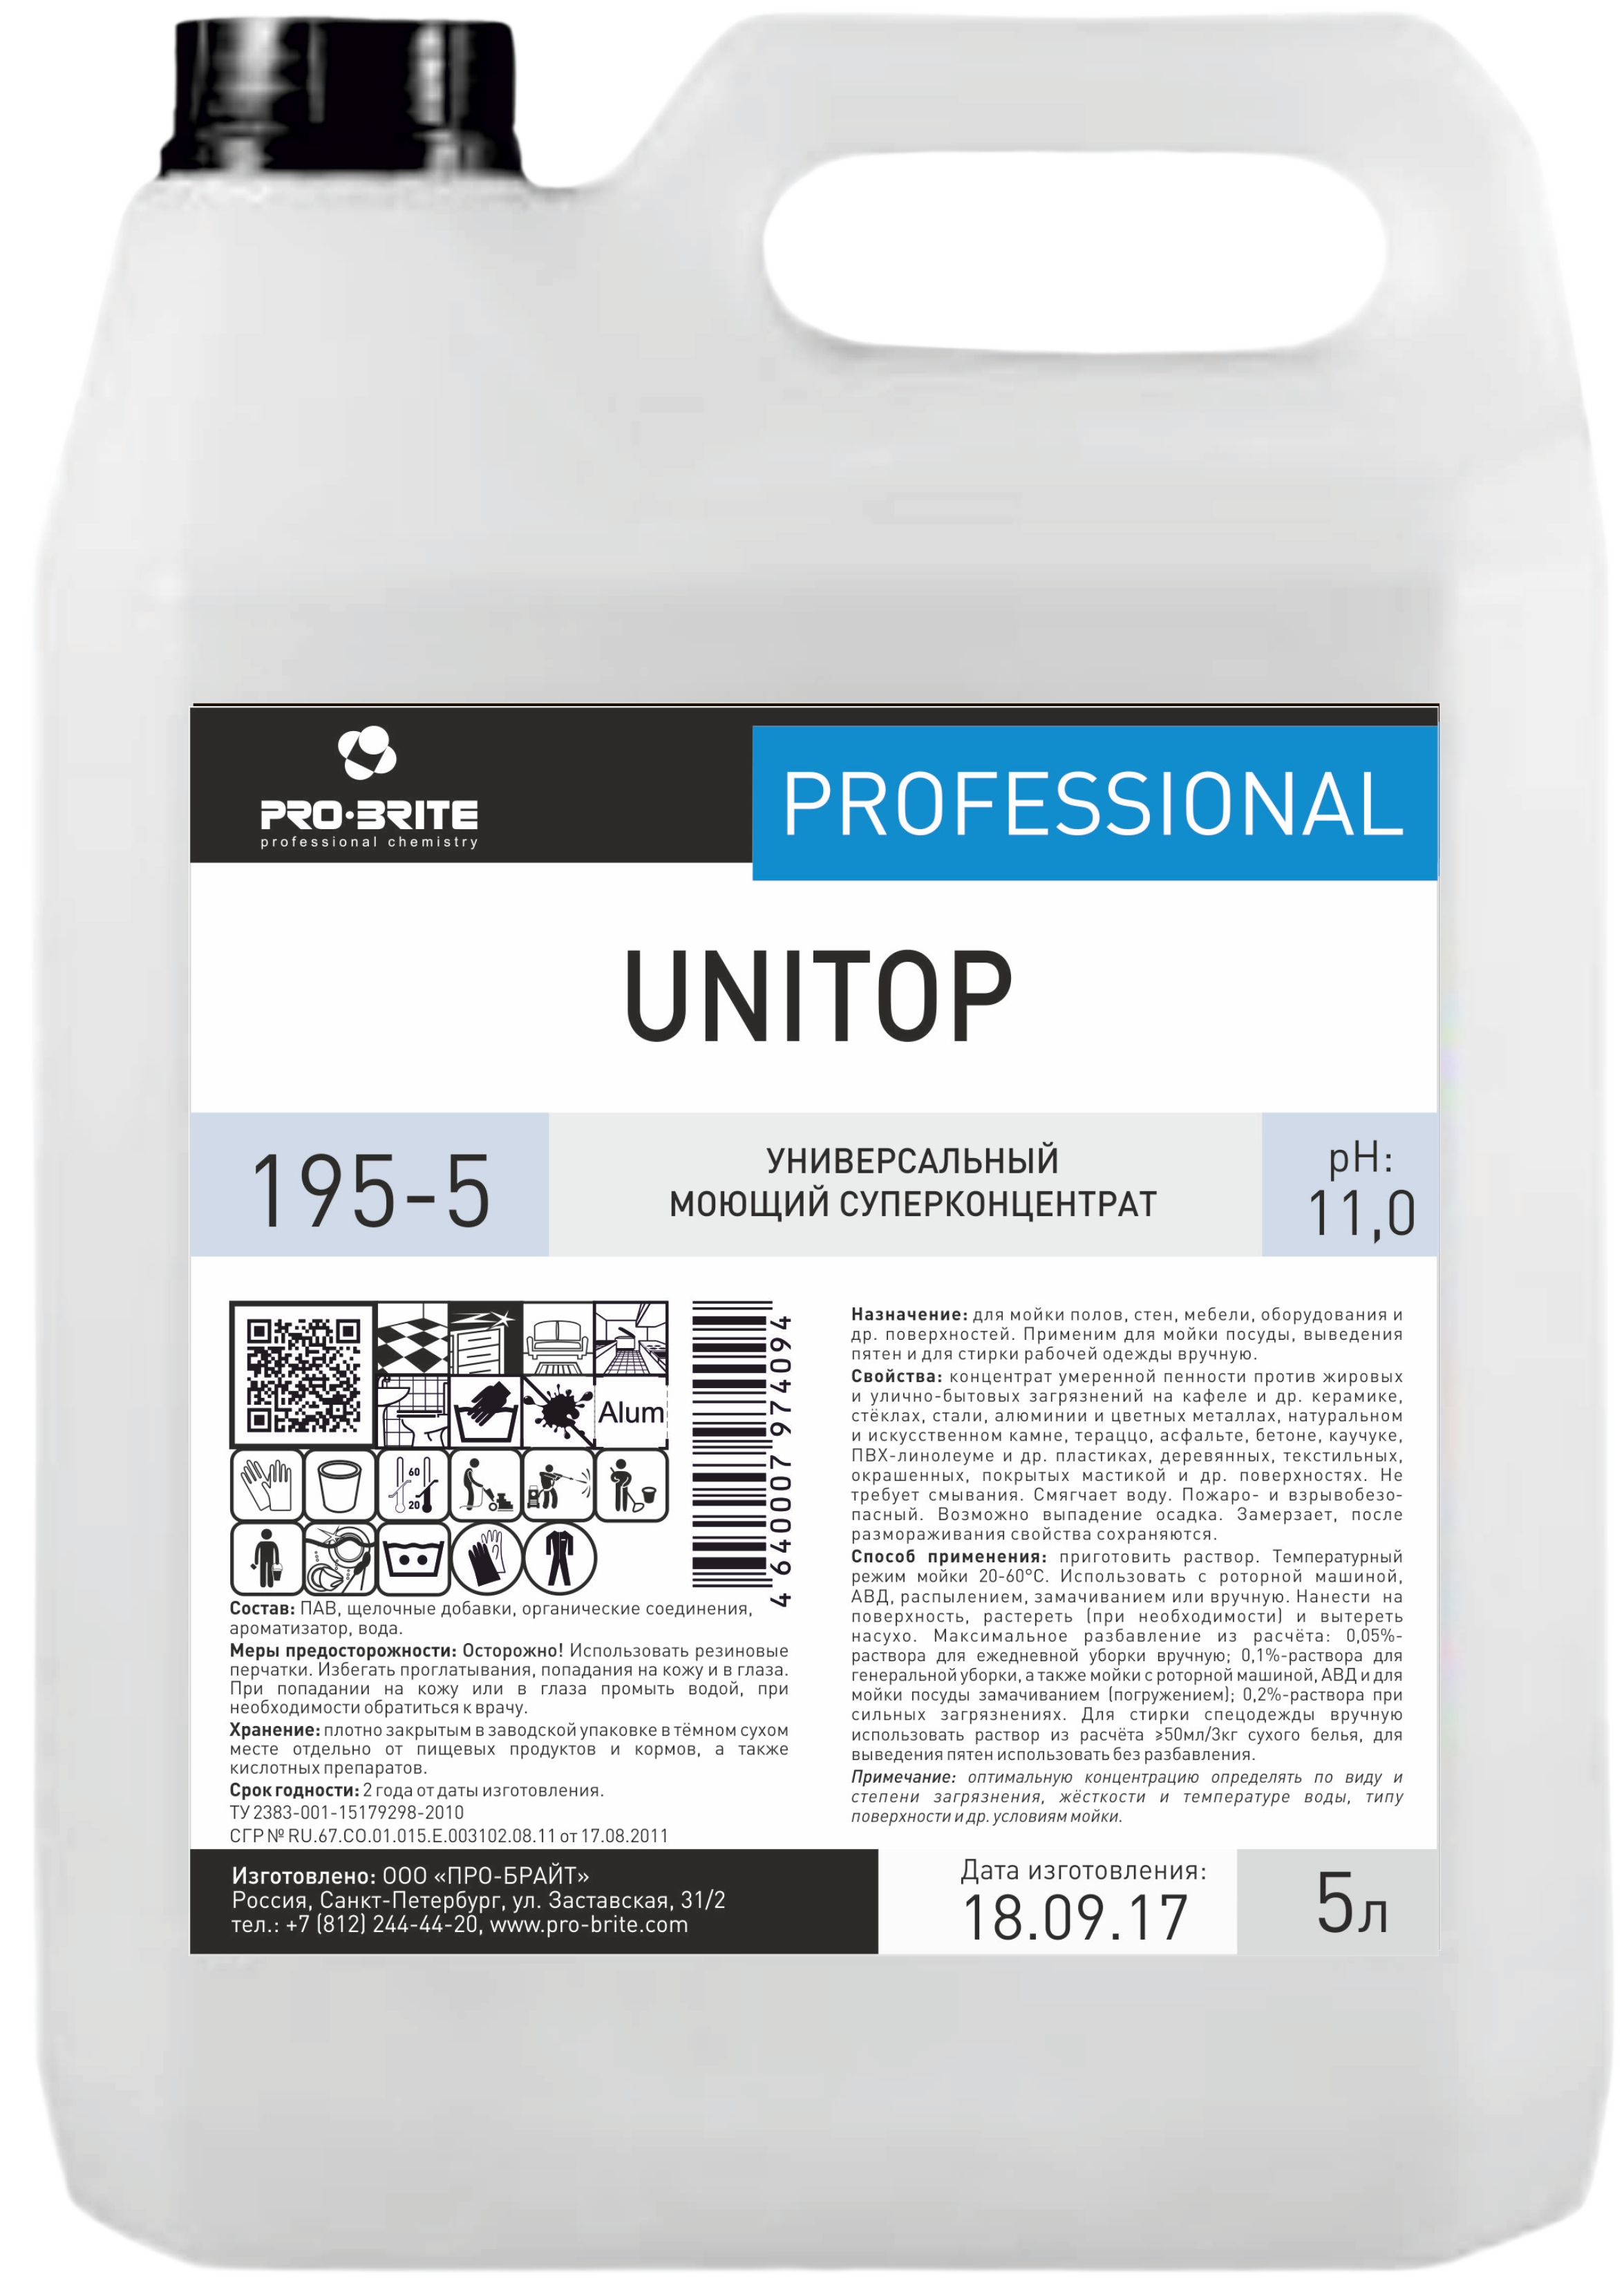 UNITOP (Унитоп) 5 л. Суперконцентрат для мойки полов, стен, мебели, оборудования и стирки рабочей одежды. PRO-BRITE